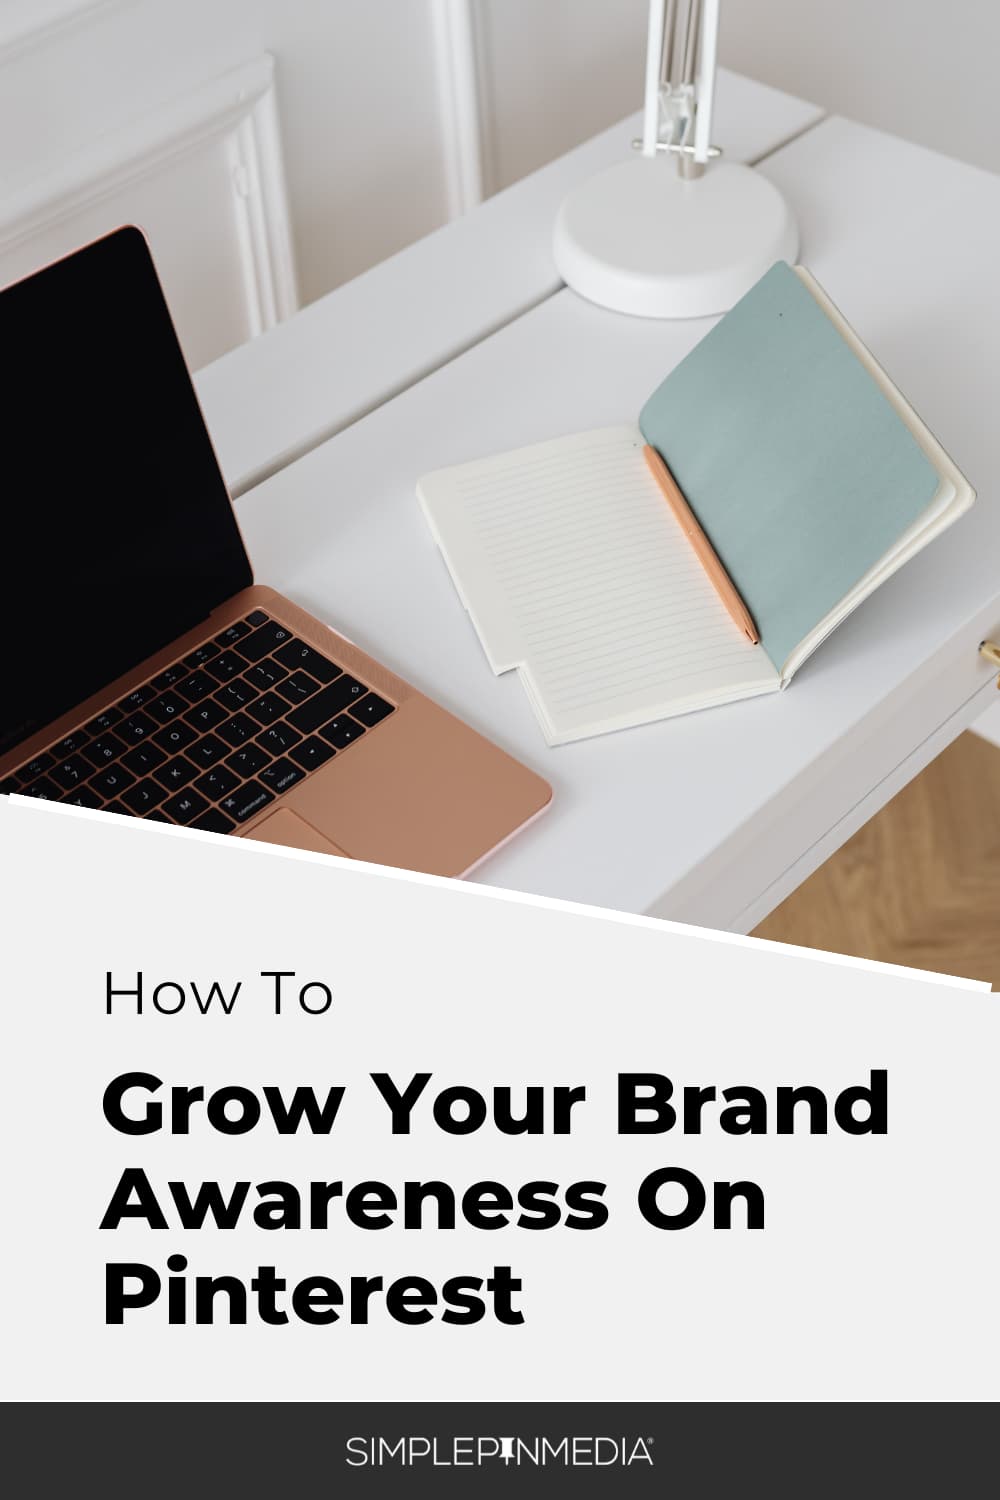 305 – Keys to Building Brand Awareness on Pinterest